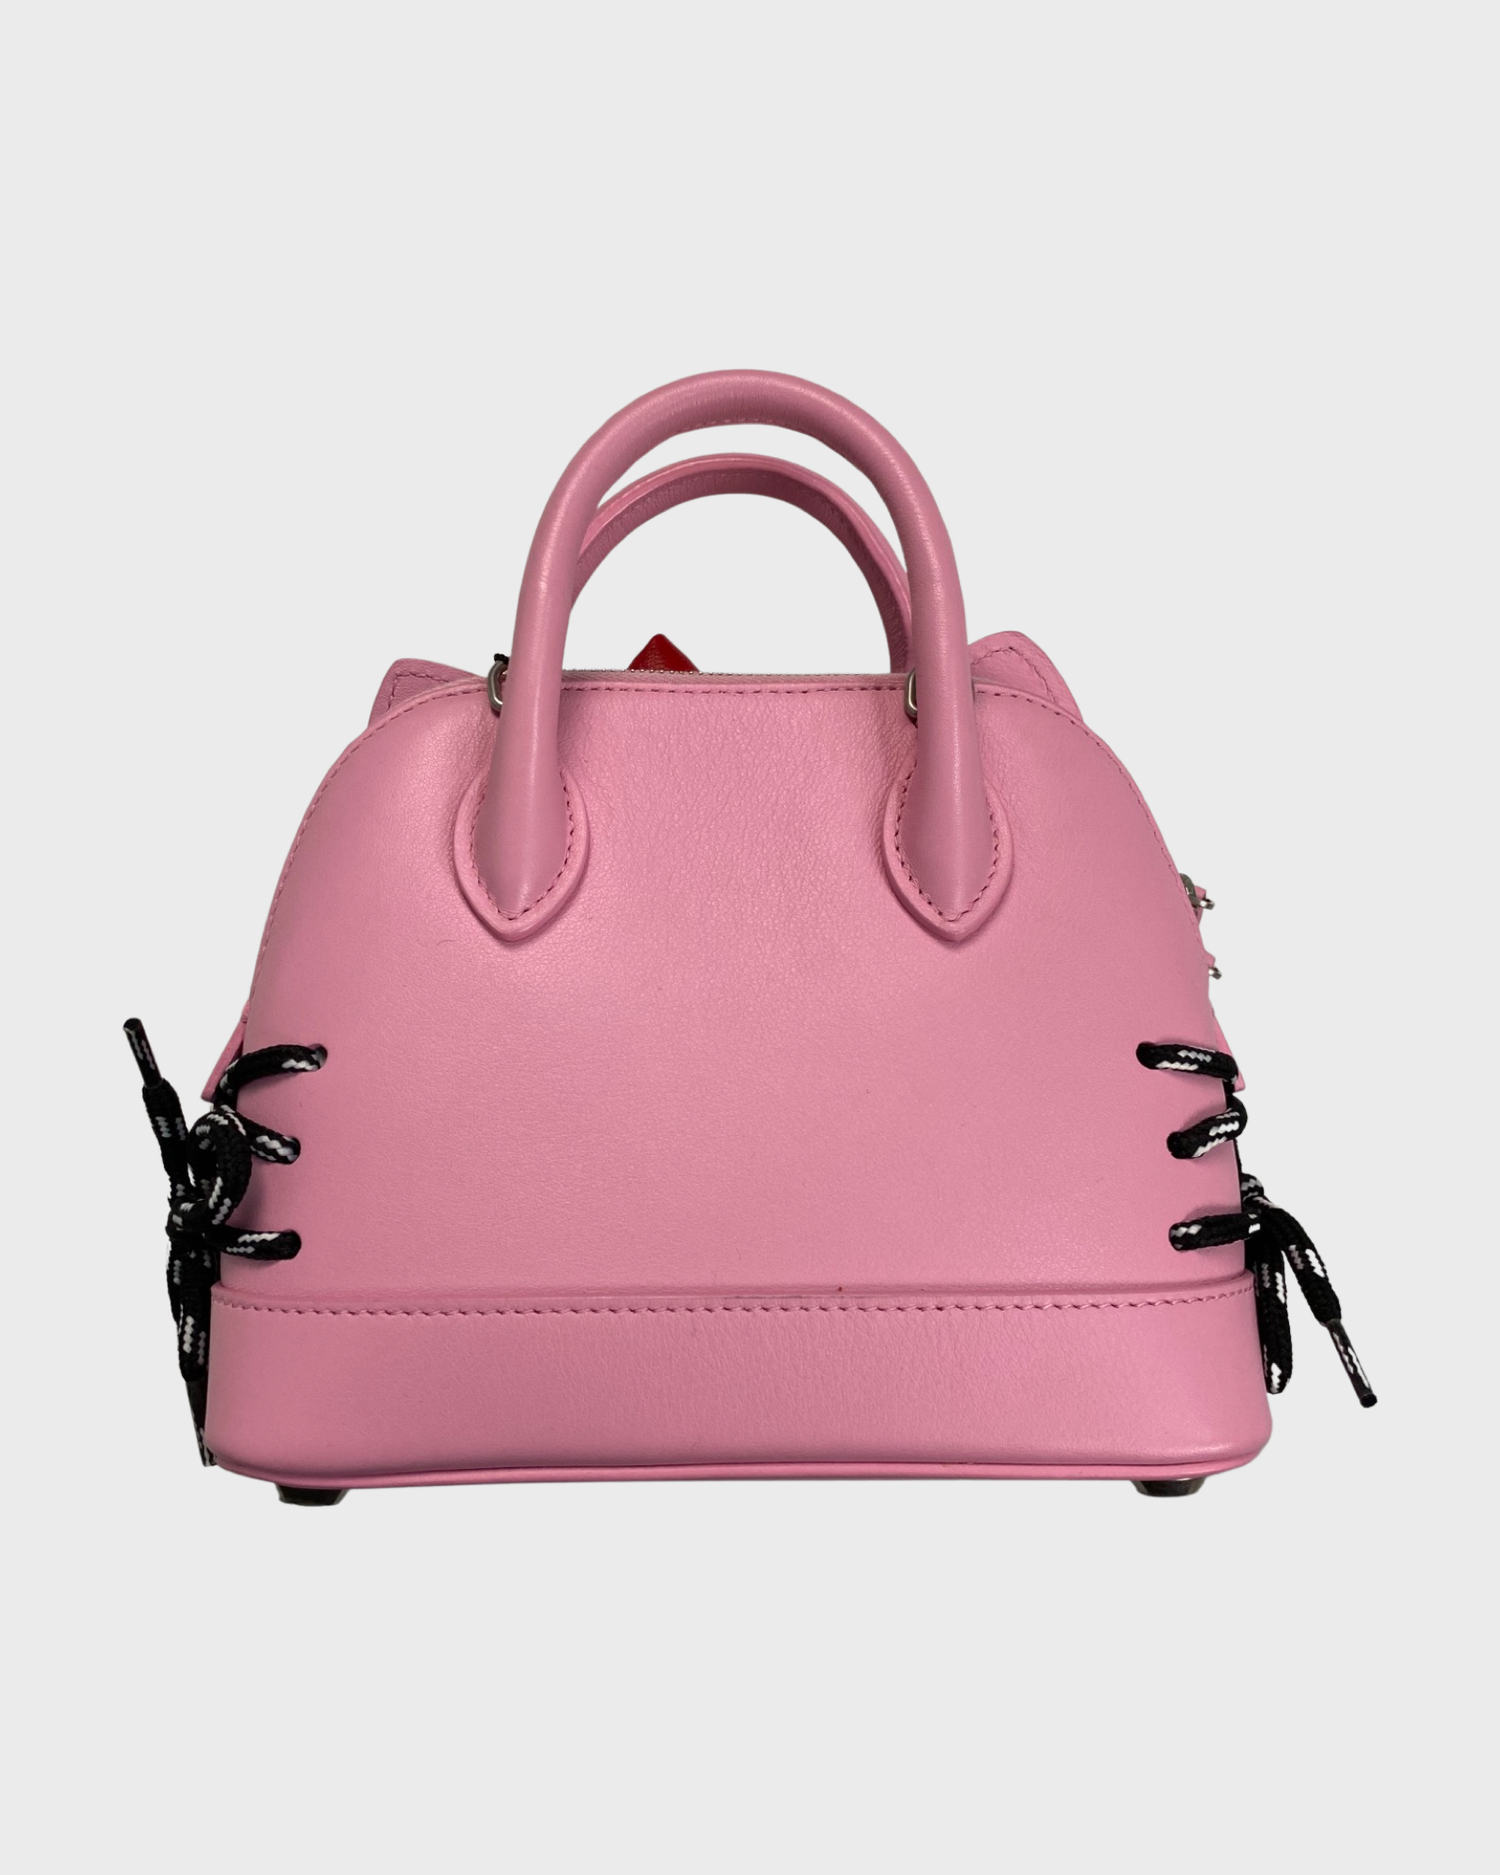 Balenciaga Women's Ville Small Handbag